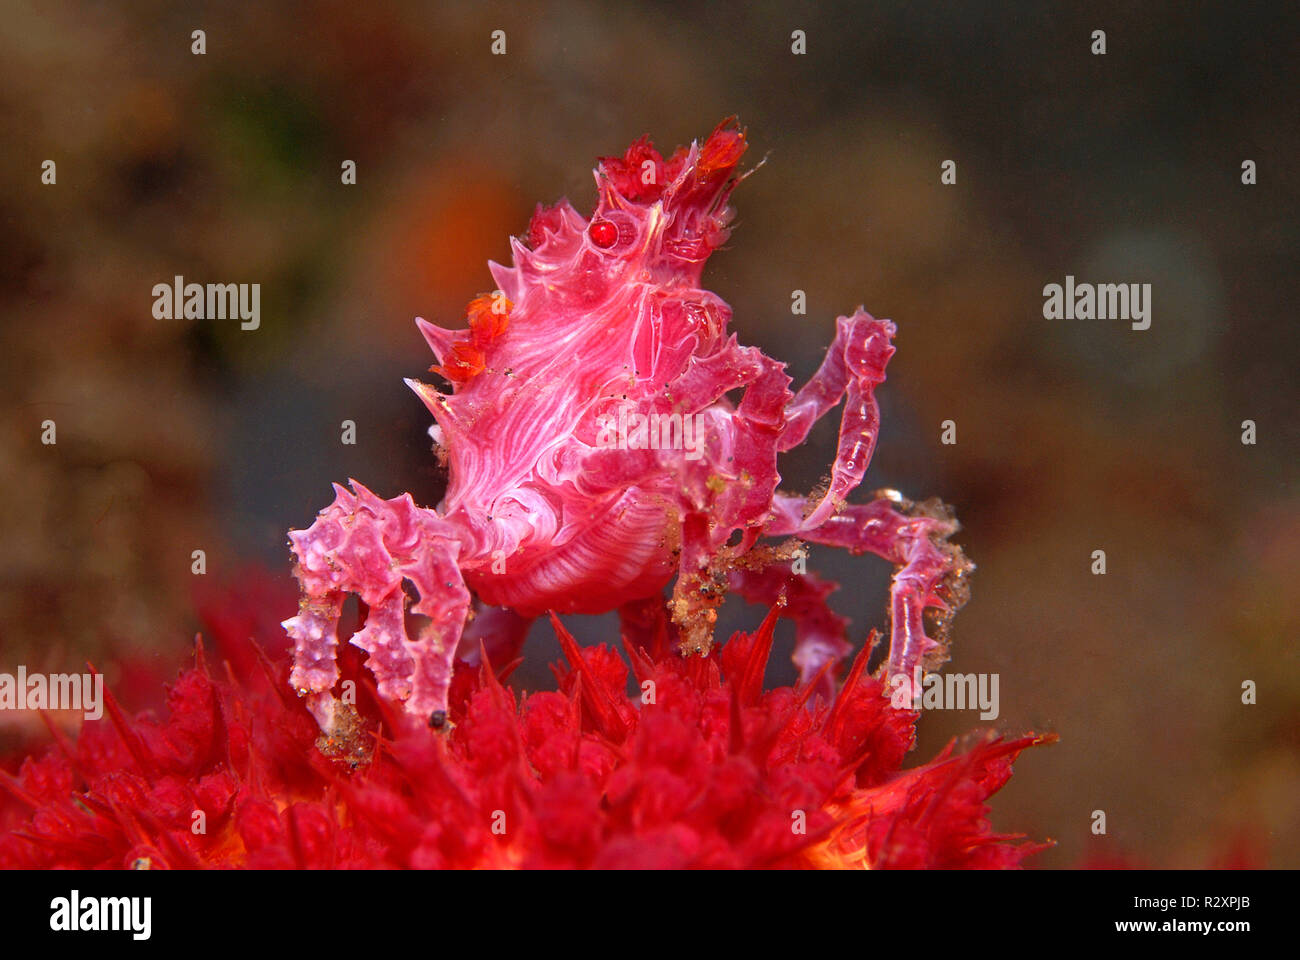 Crabe corail mou ou crabe Hoplophrys oatesii (bonbons) vivant dans les coraux mous (Alcyonacea), le Parc National de Komodo, l'île de Komodo, Indonésie Banque D'Images